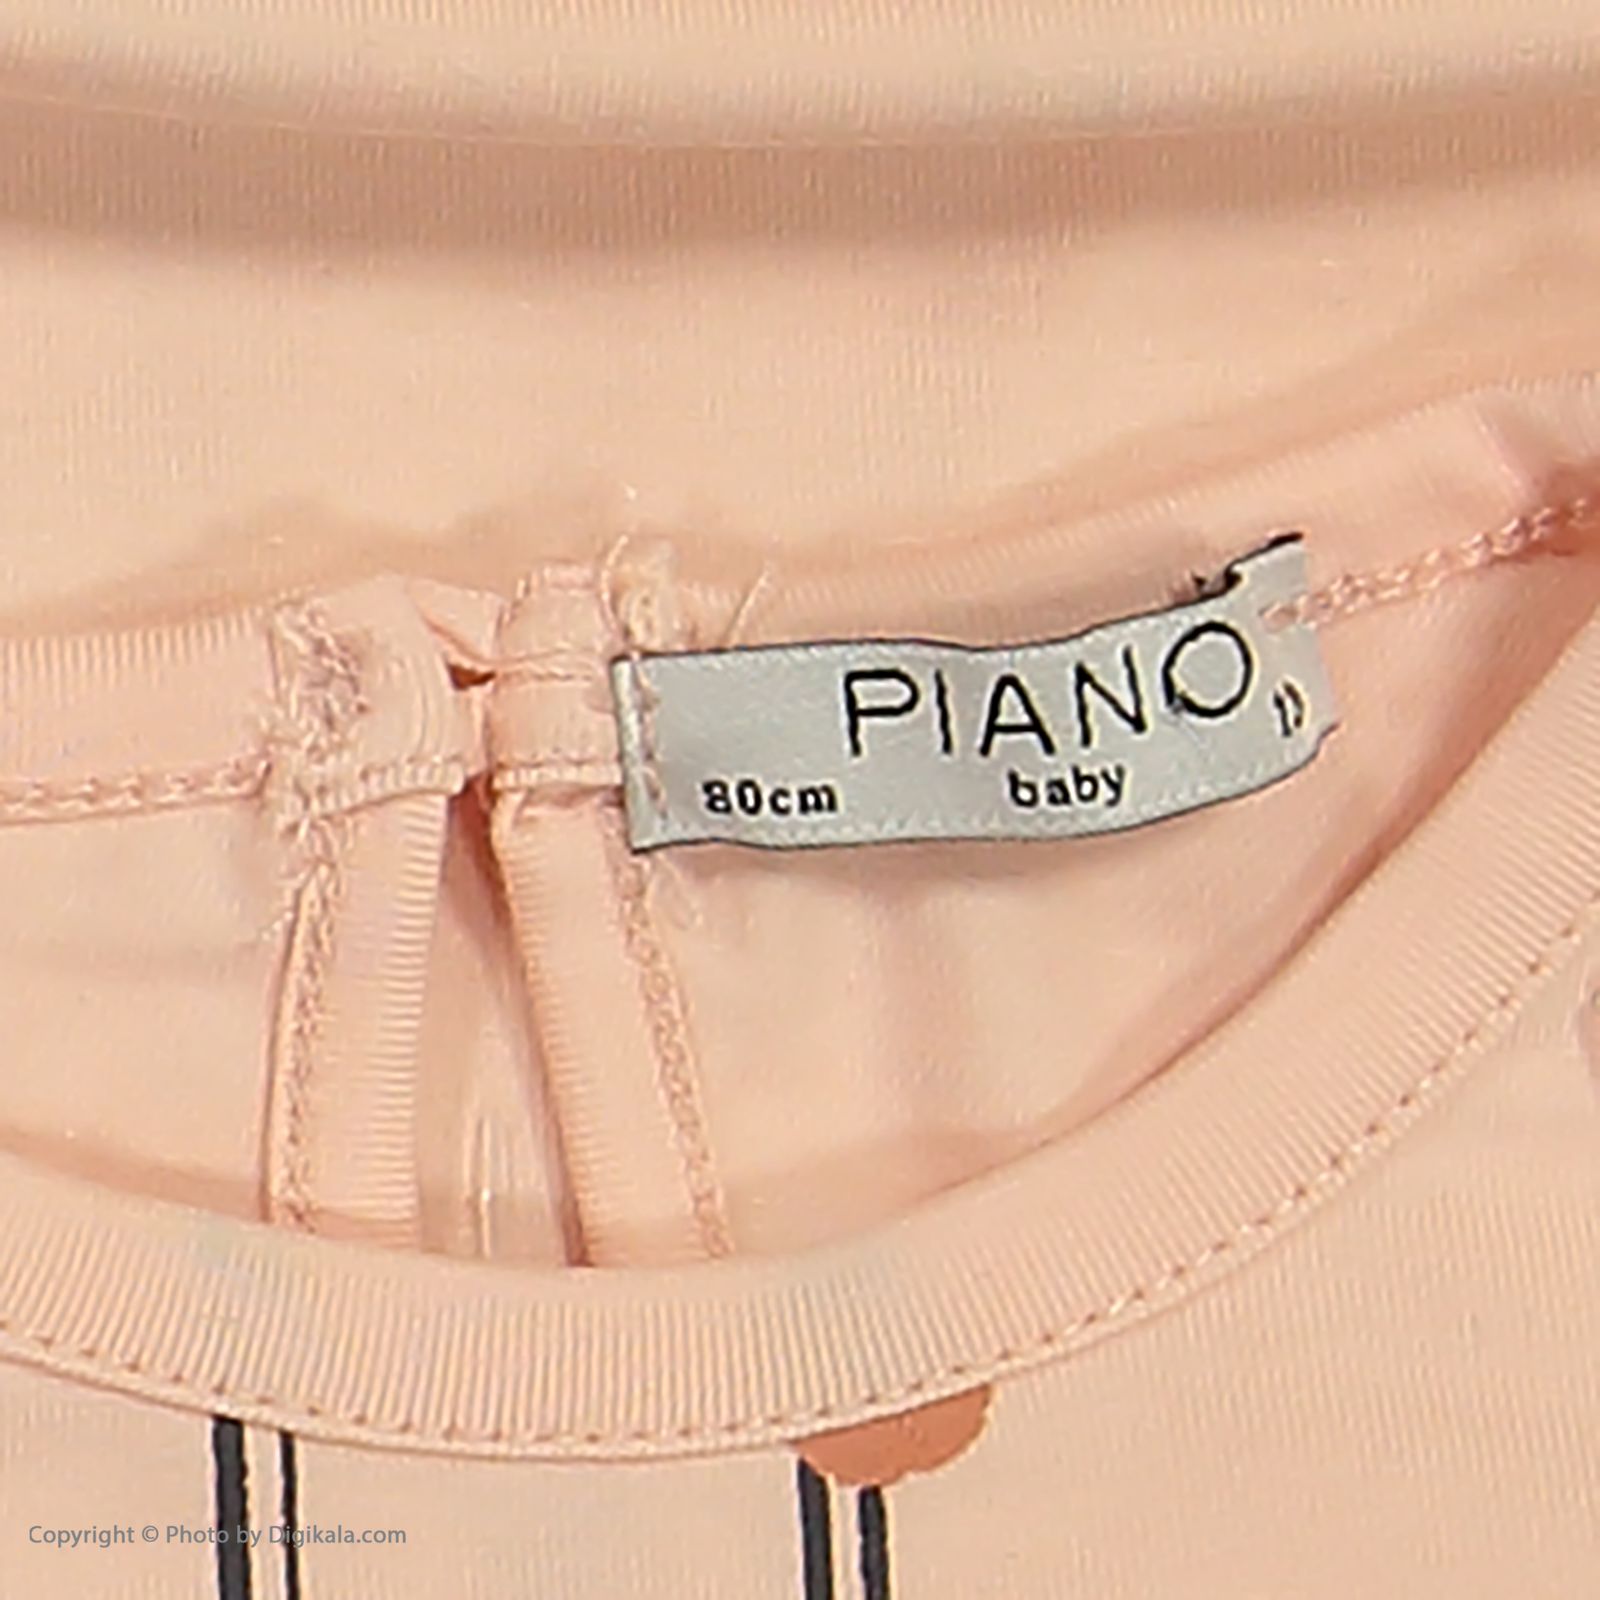 ست تی شرت و شلوار نوزادی دخترانه پیانو مدل 1009009801097-21 -  - 9